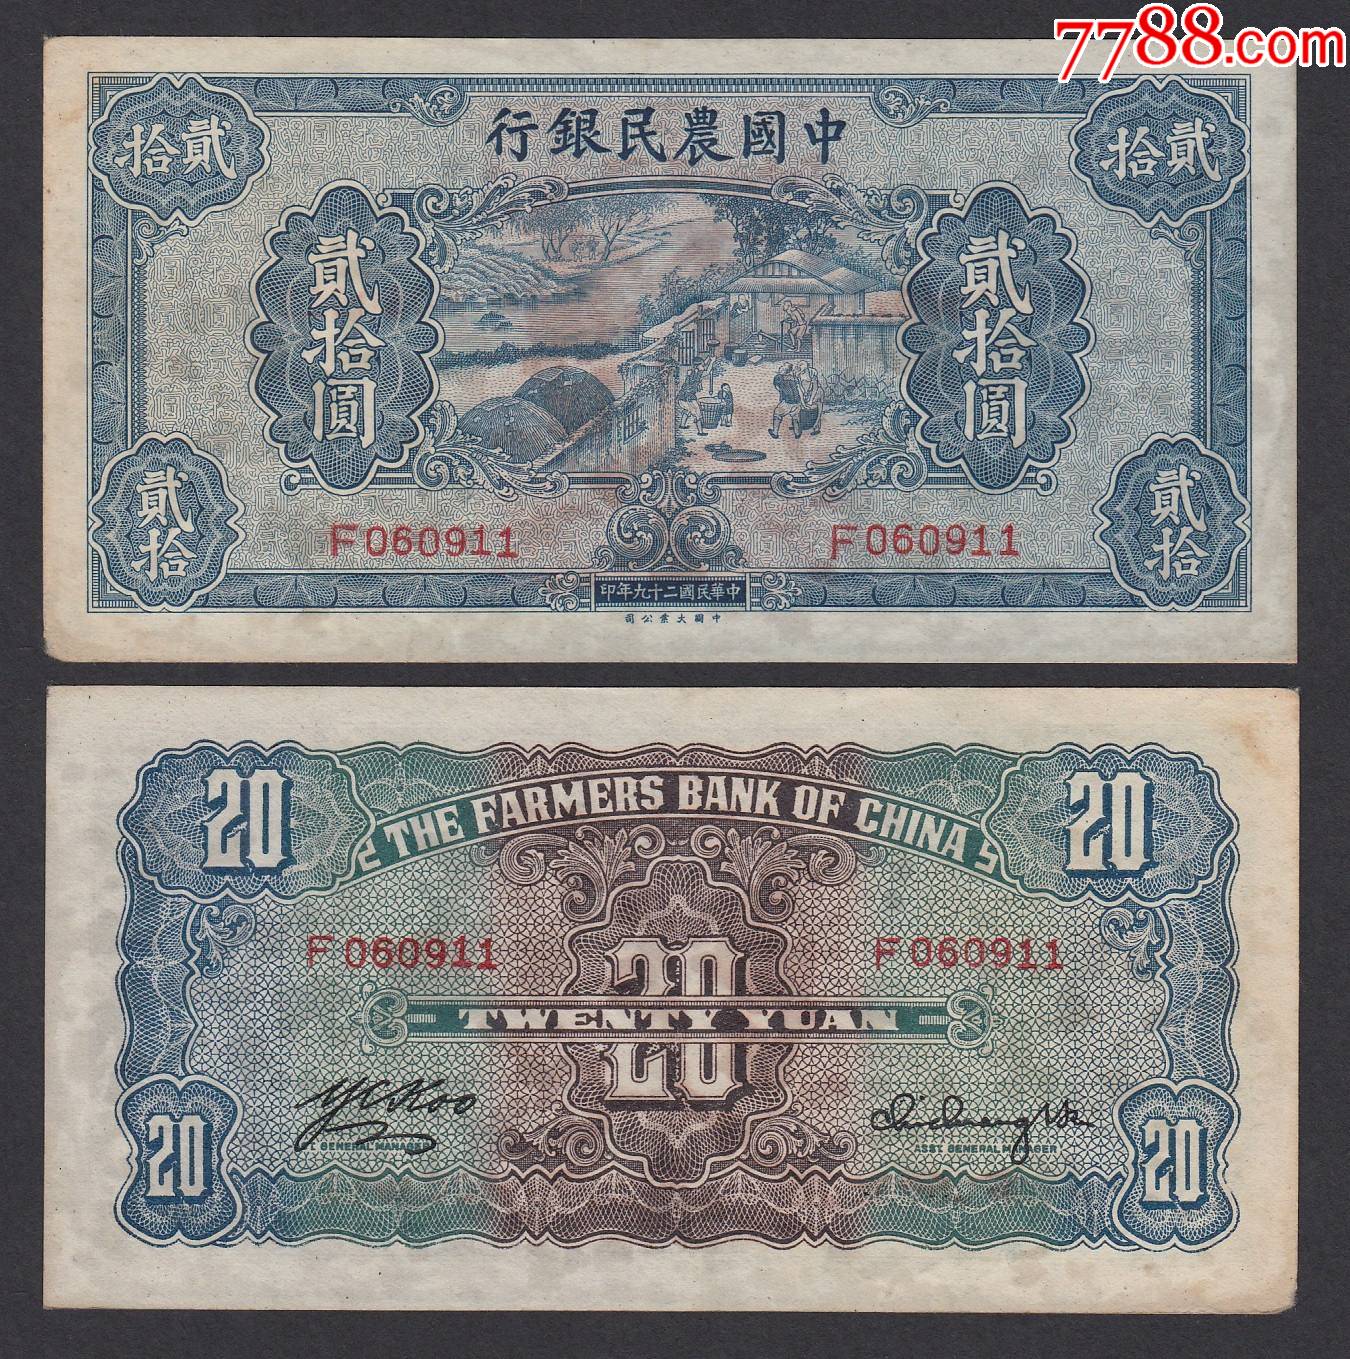 老版20元人民币图案图片